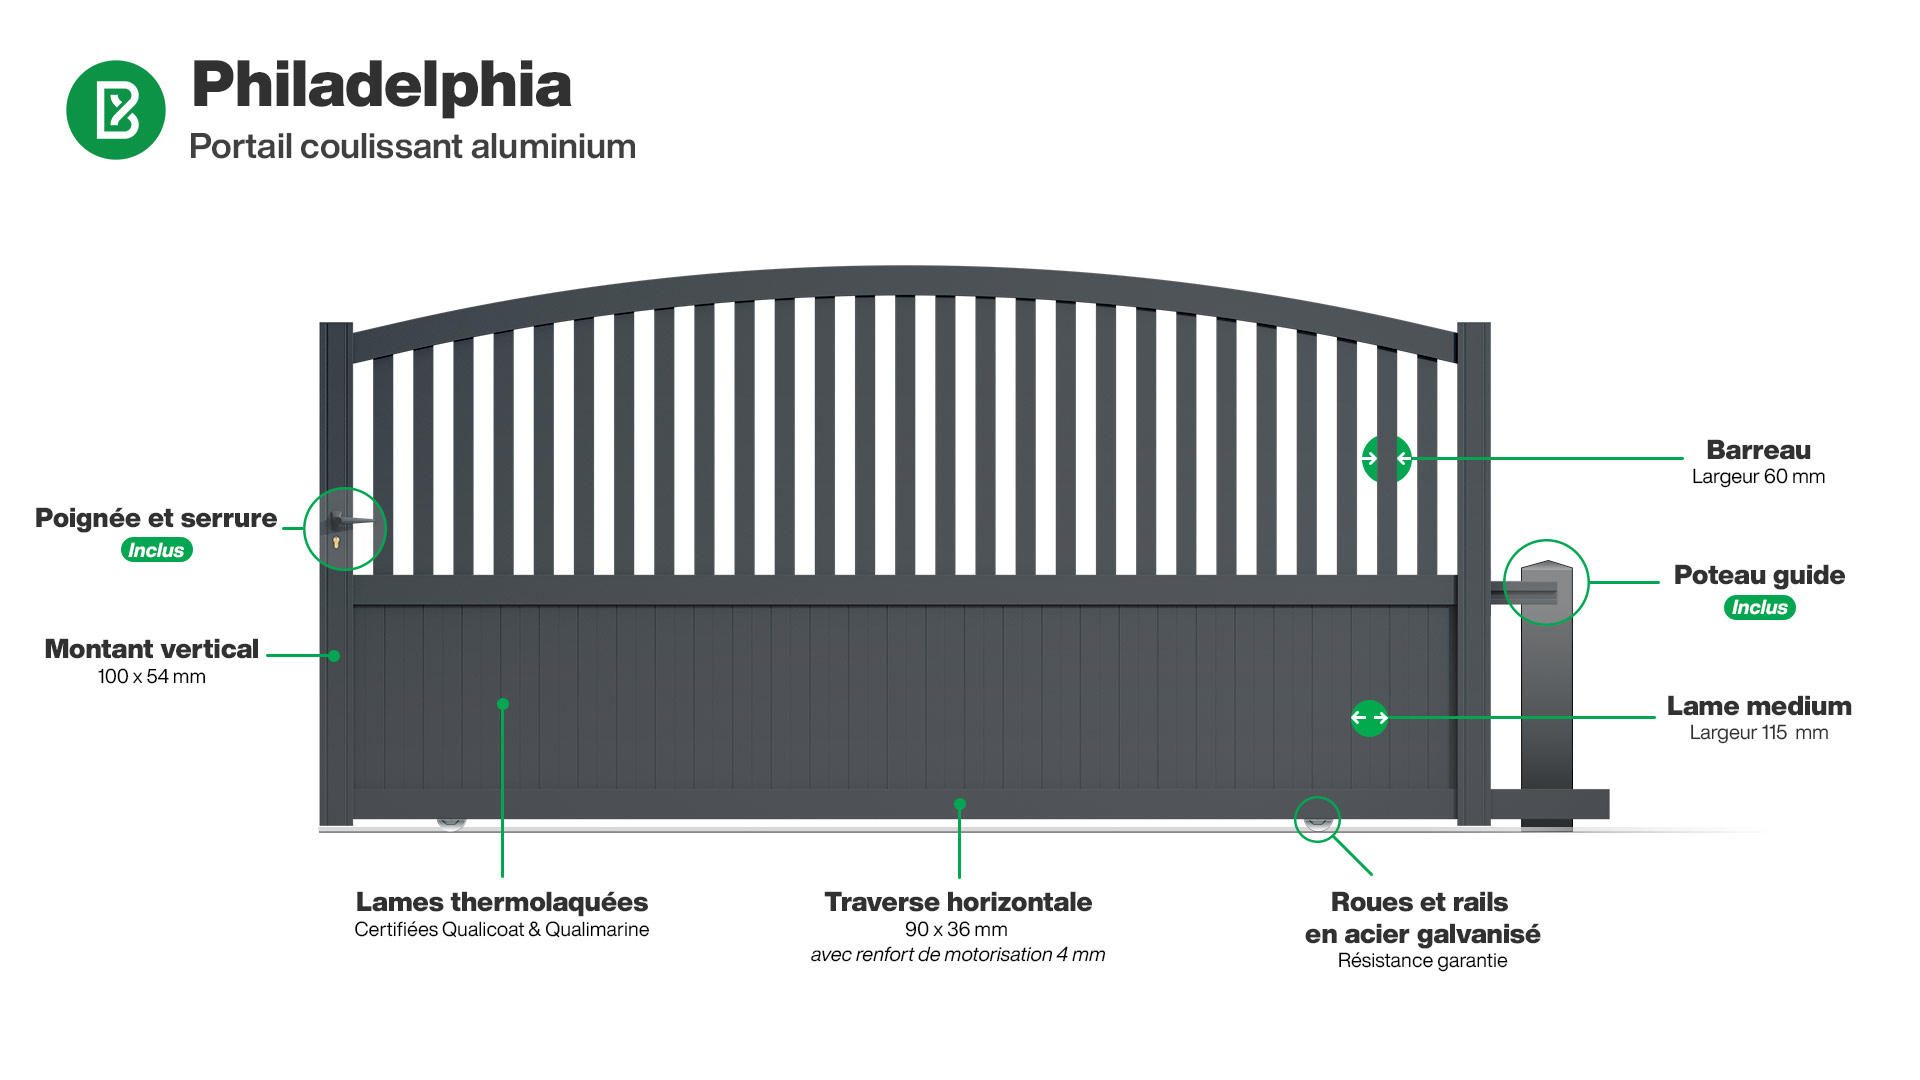 Portail : Infographie d'un portail coulissant aluminium modèle PHILADELPHIA